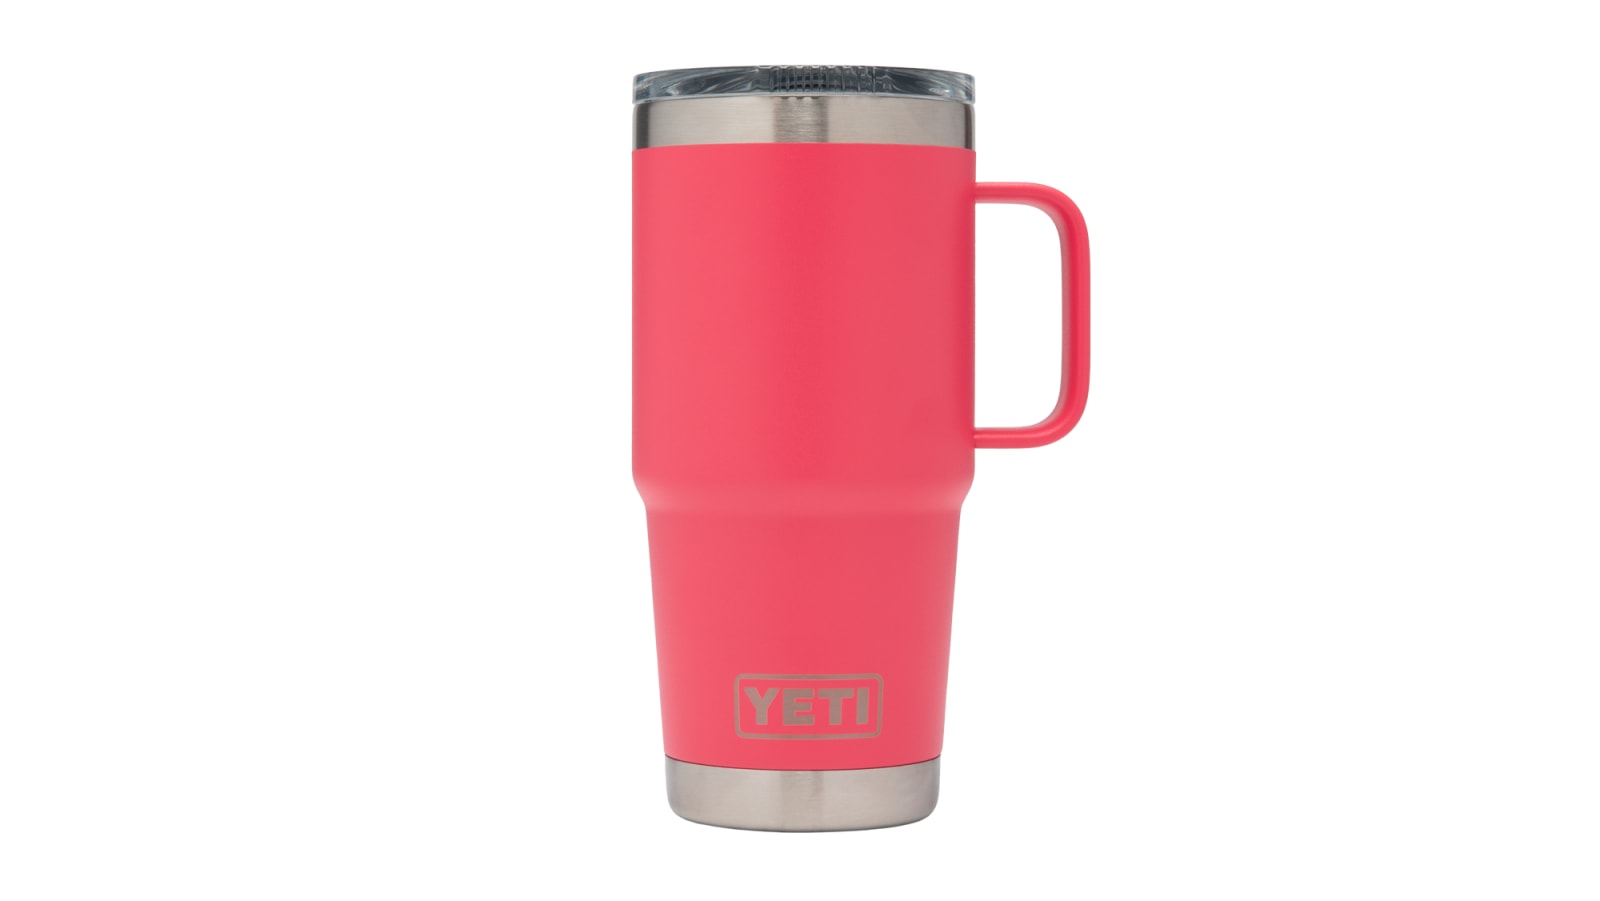 YETI Rambler - 20oz Travel Mug - Bimini Pink